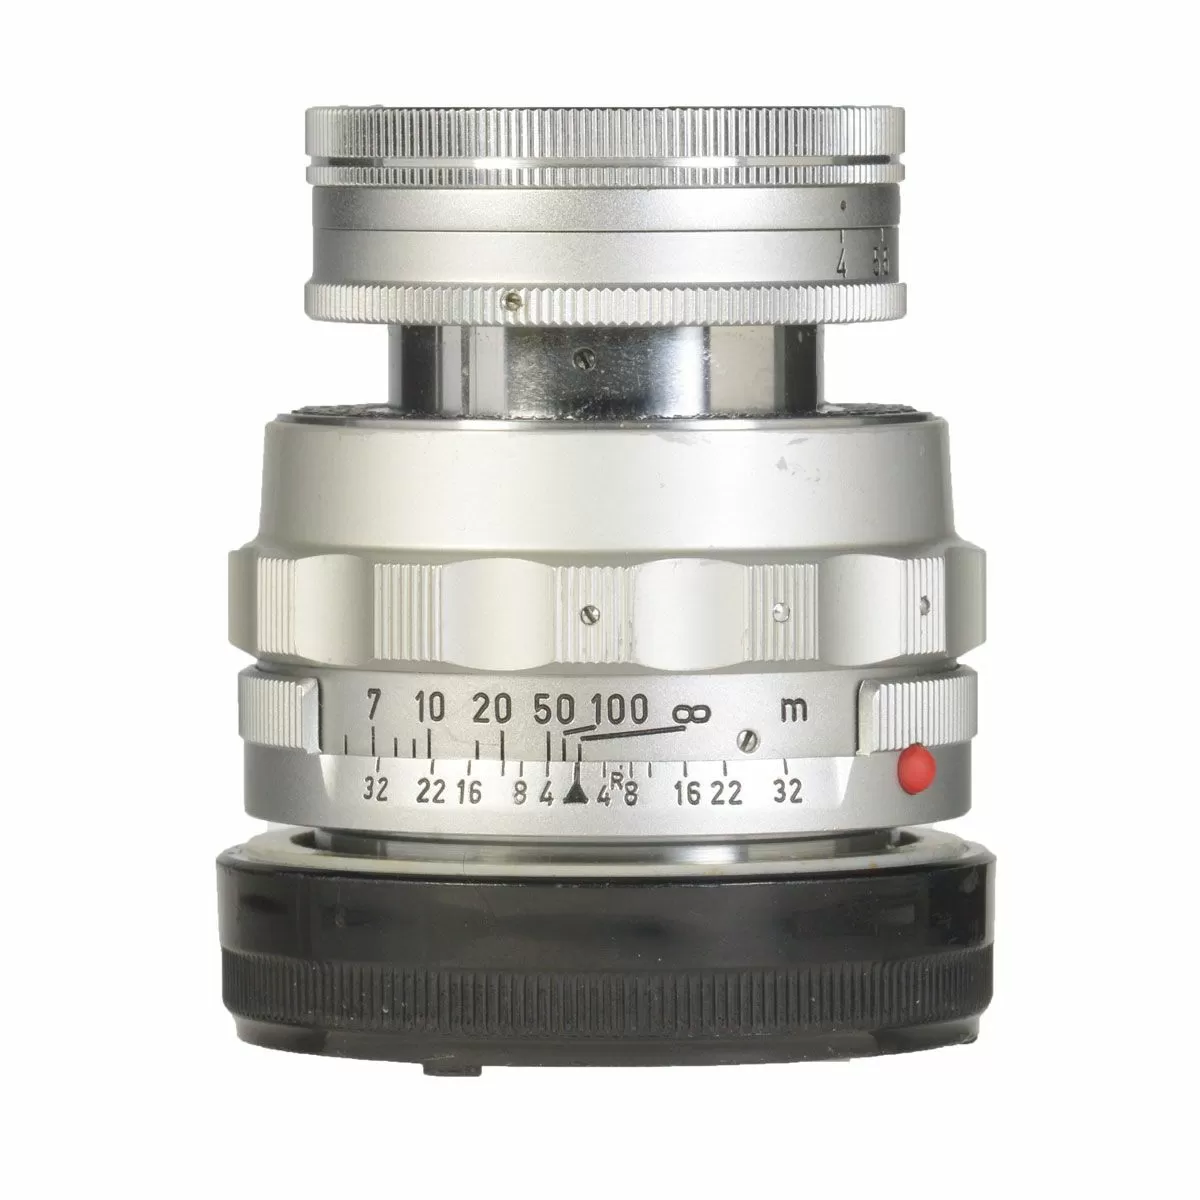 Leica Elmar-M 90mm f/4 Wetzlar Silver б/у